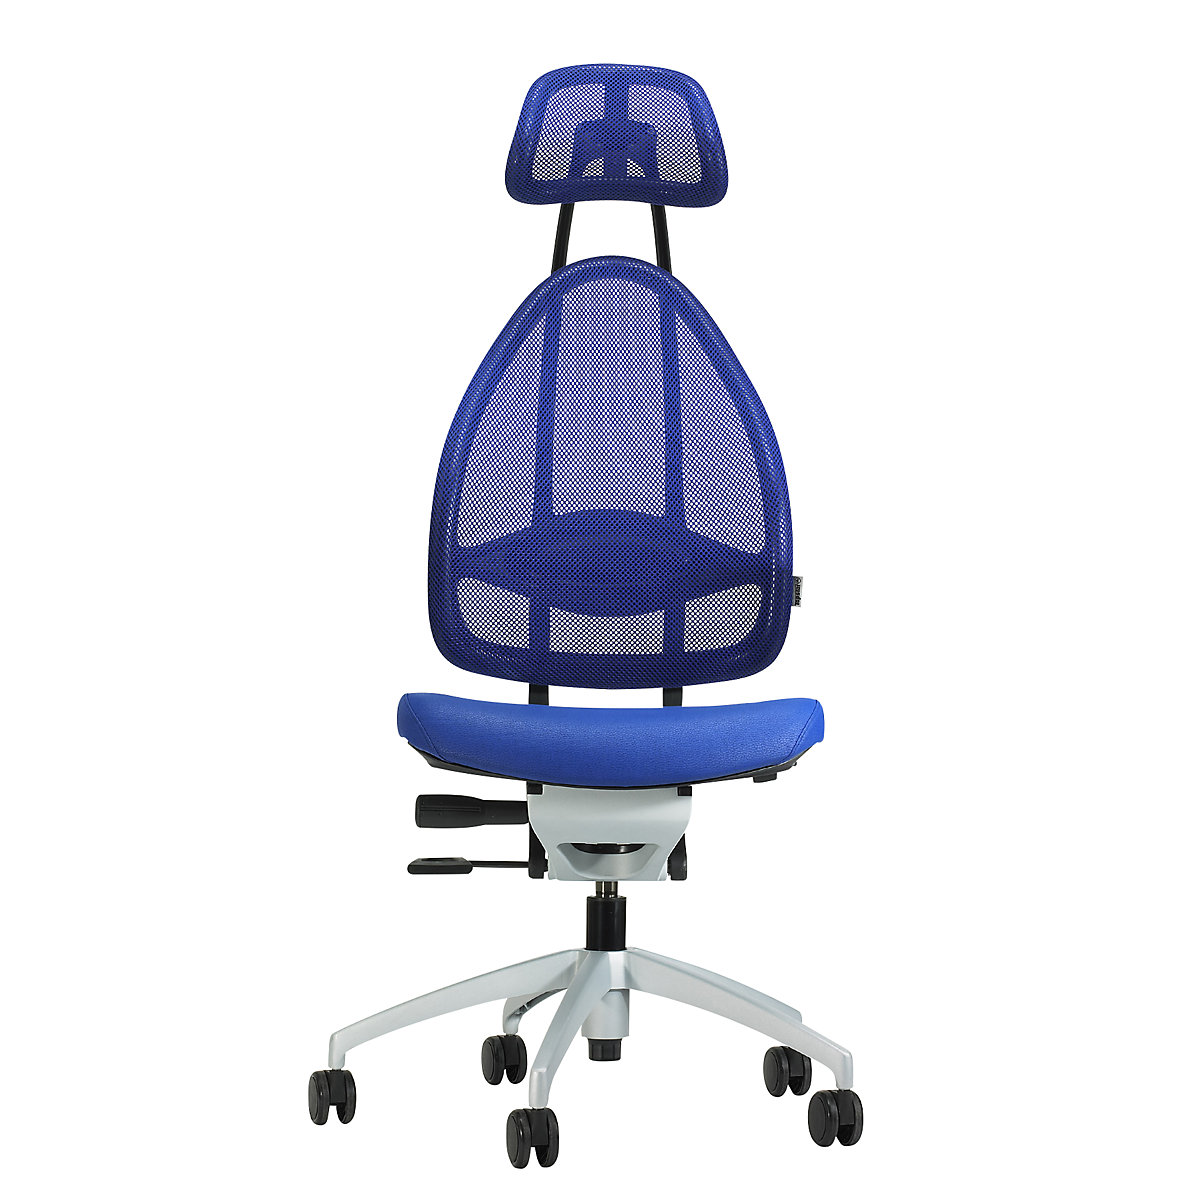 Efektowne obrotowe krzesło biurowe, z zagłówkiem i oparciem siatkowym – Topstar, całk. wys. oparcia 830 mm, błękit królewski-1